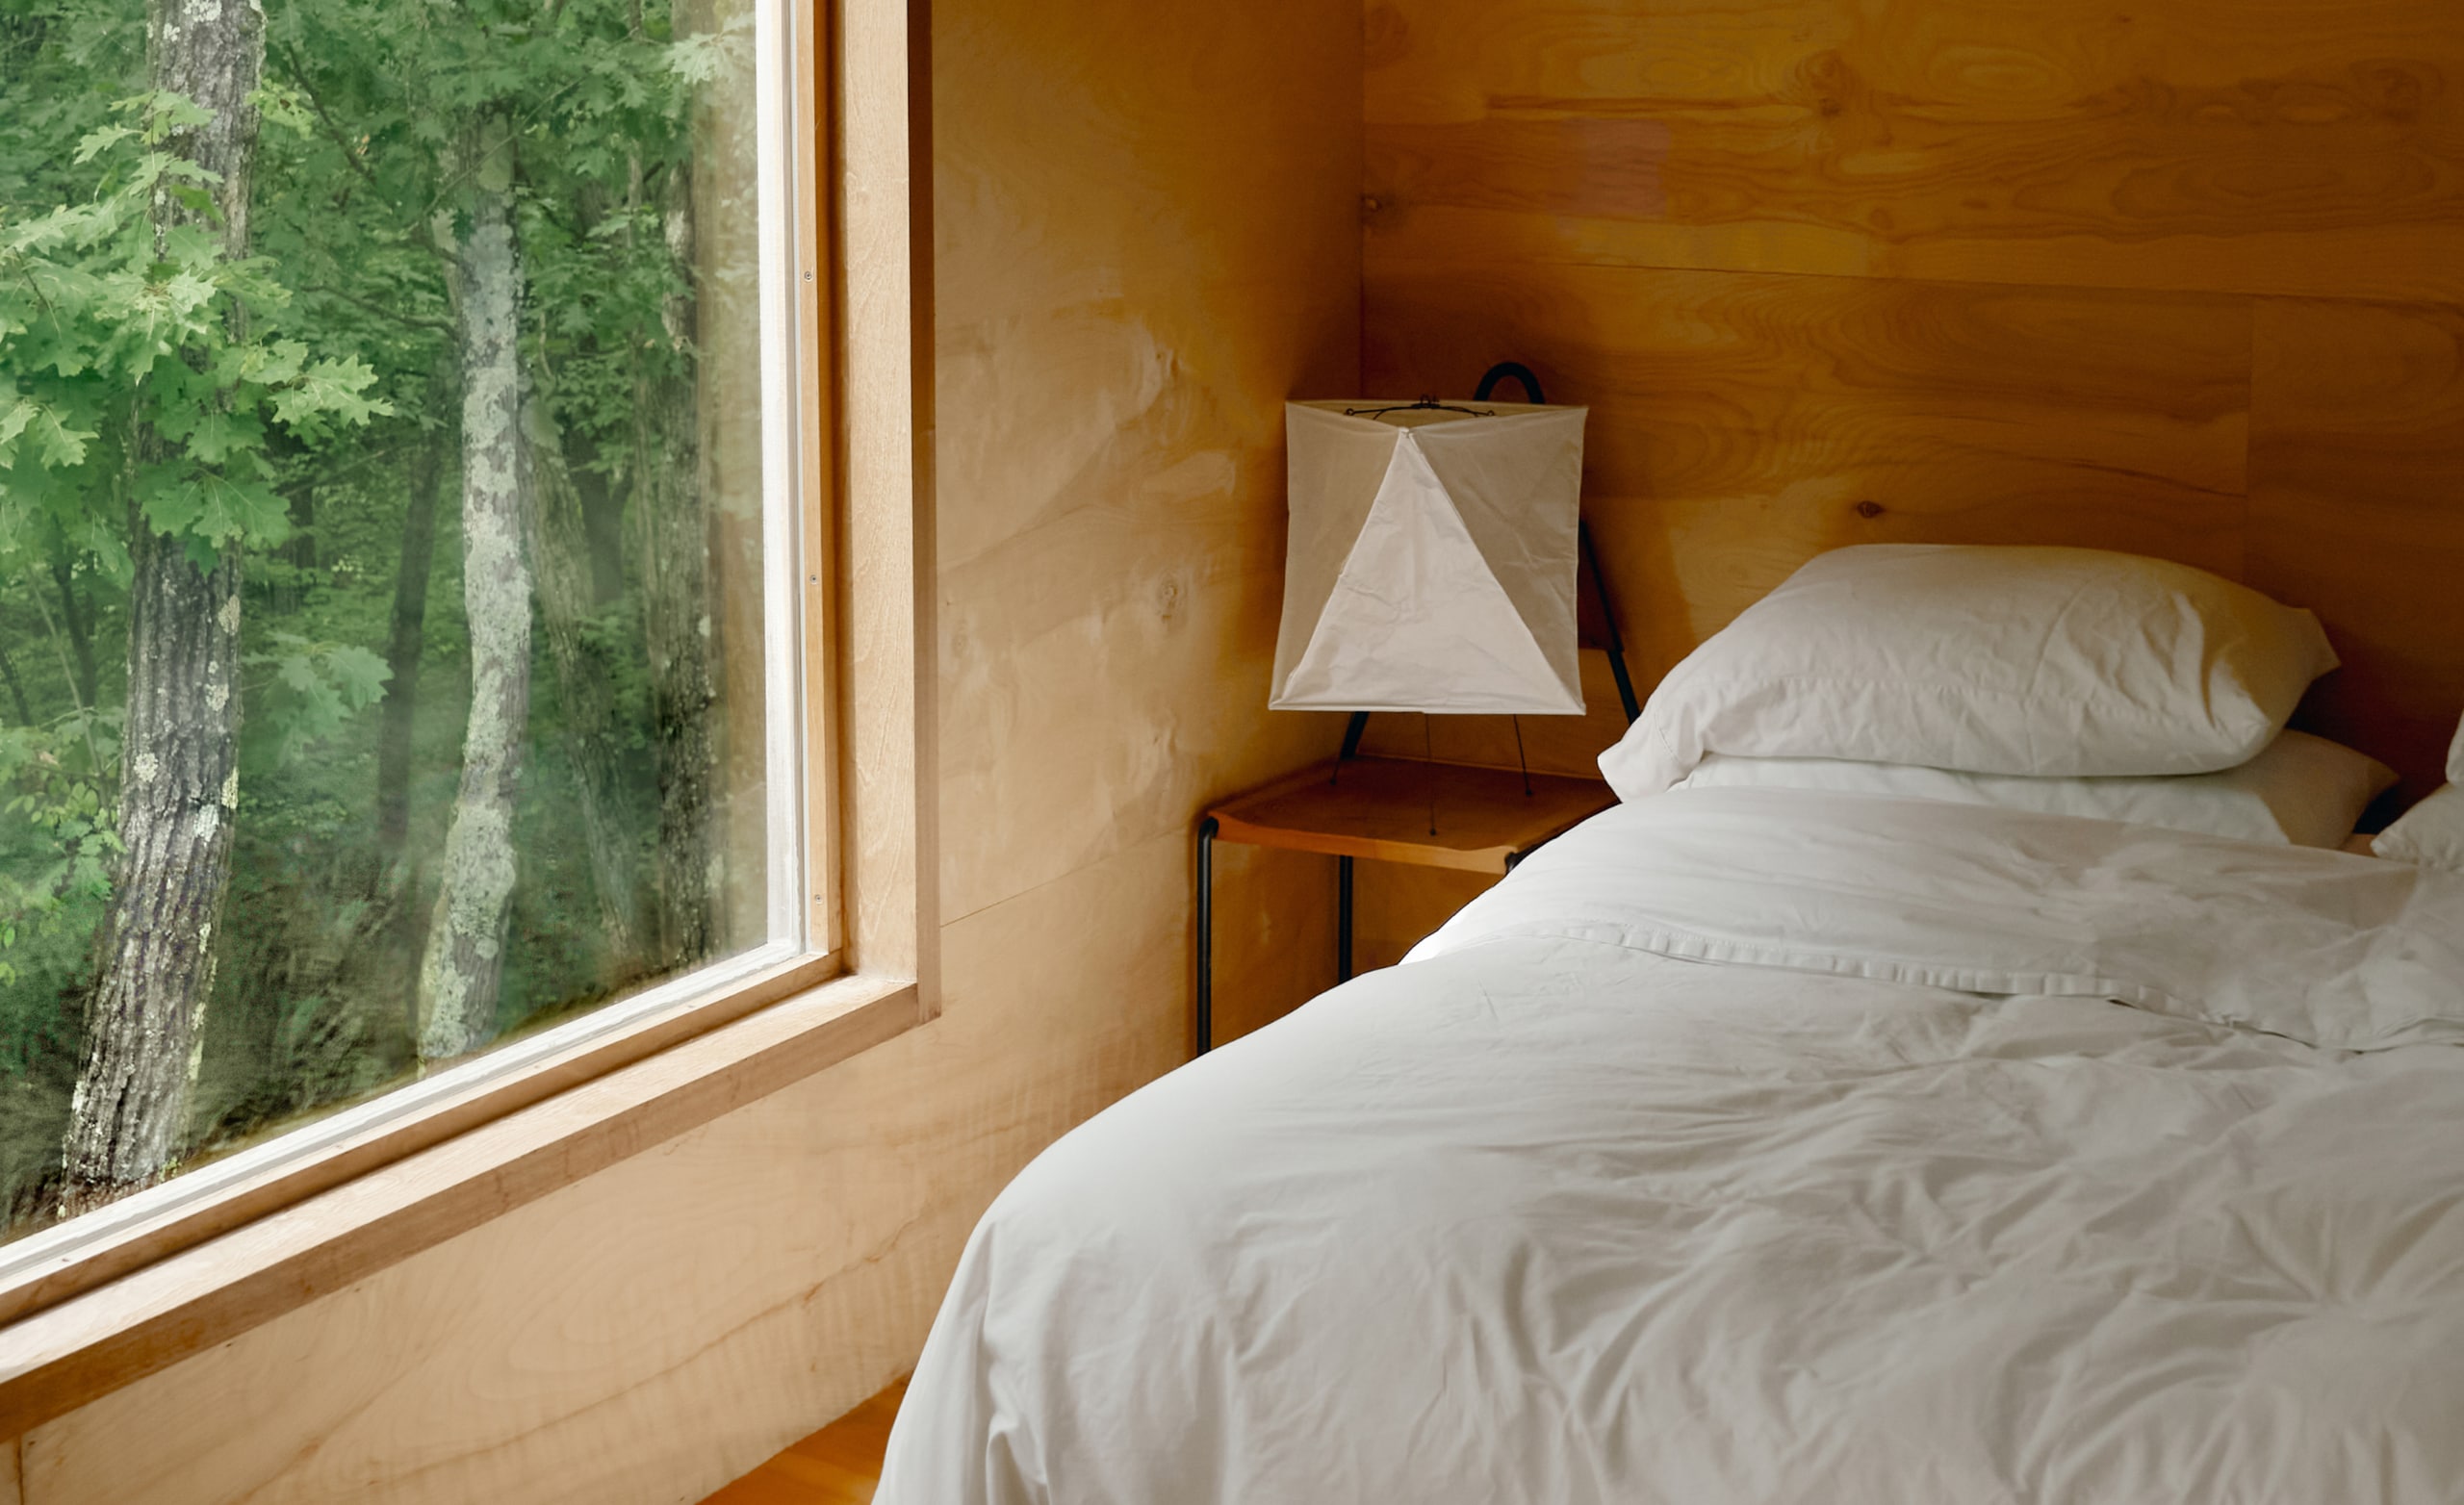 Ložnice s velkým oknem s výhledem na stromy a v ní je čerstvě ustlaná postel s bílým povlečením.